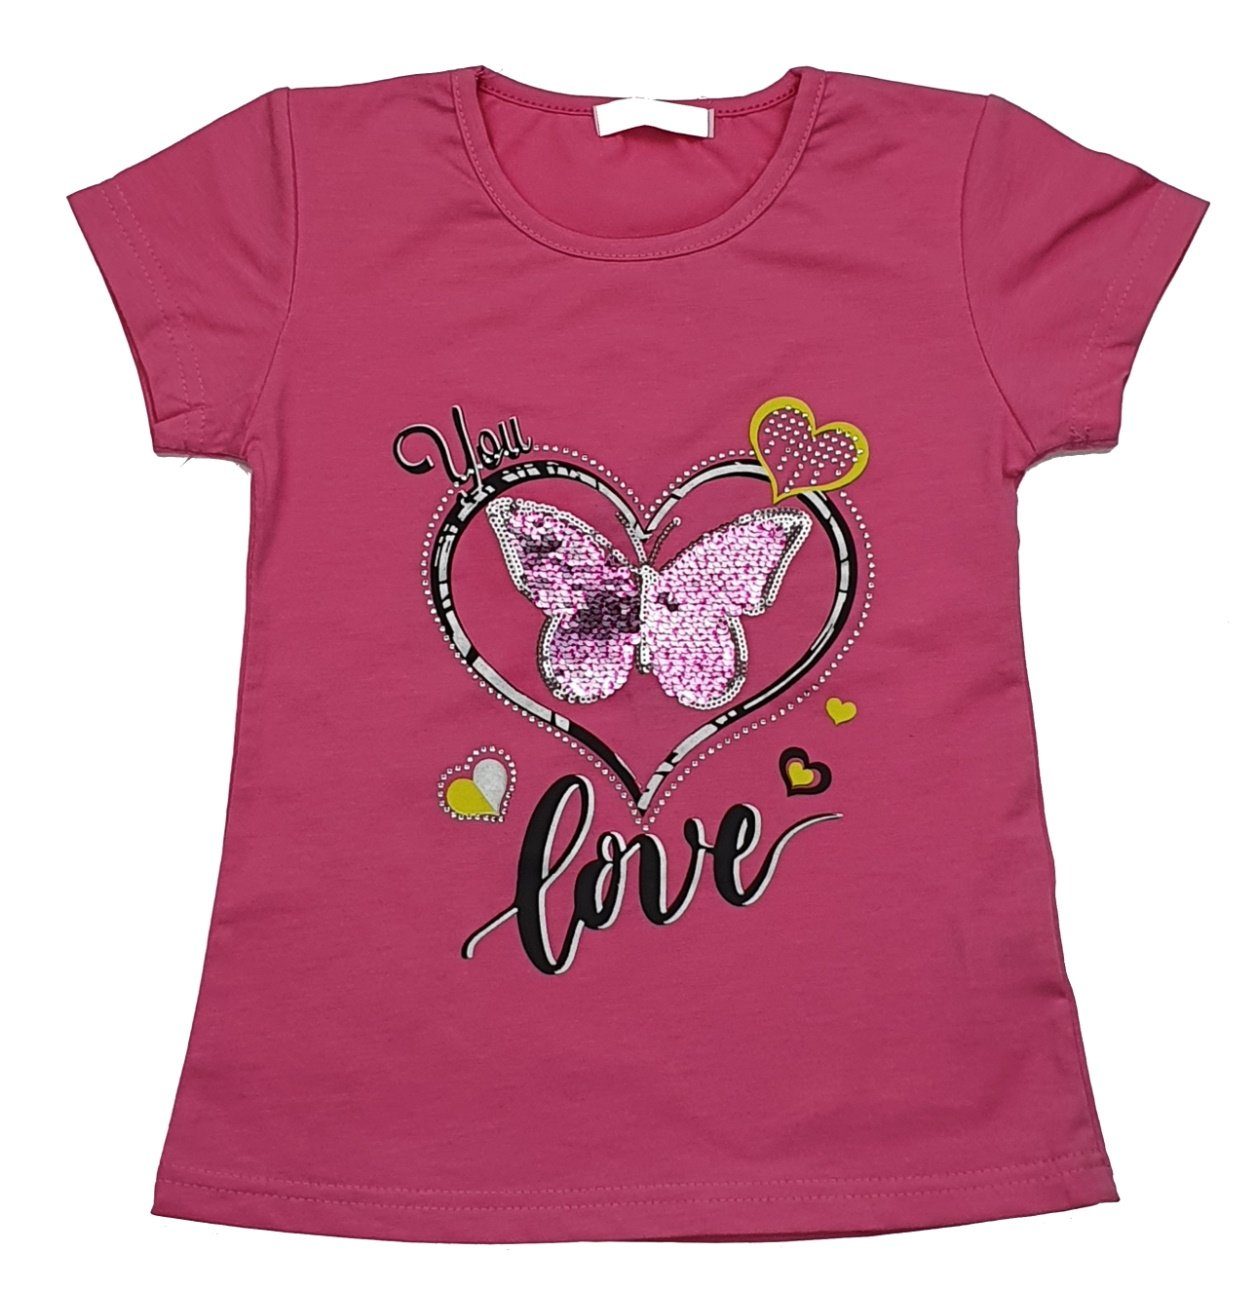 T-Shirt Girls T-Shirt Sommer MS807 Shirt Fashion Mädchen Pink